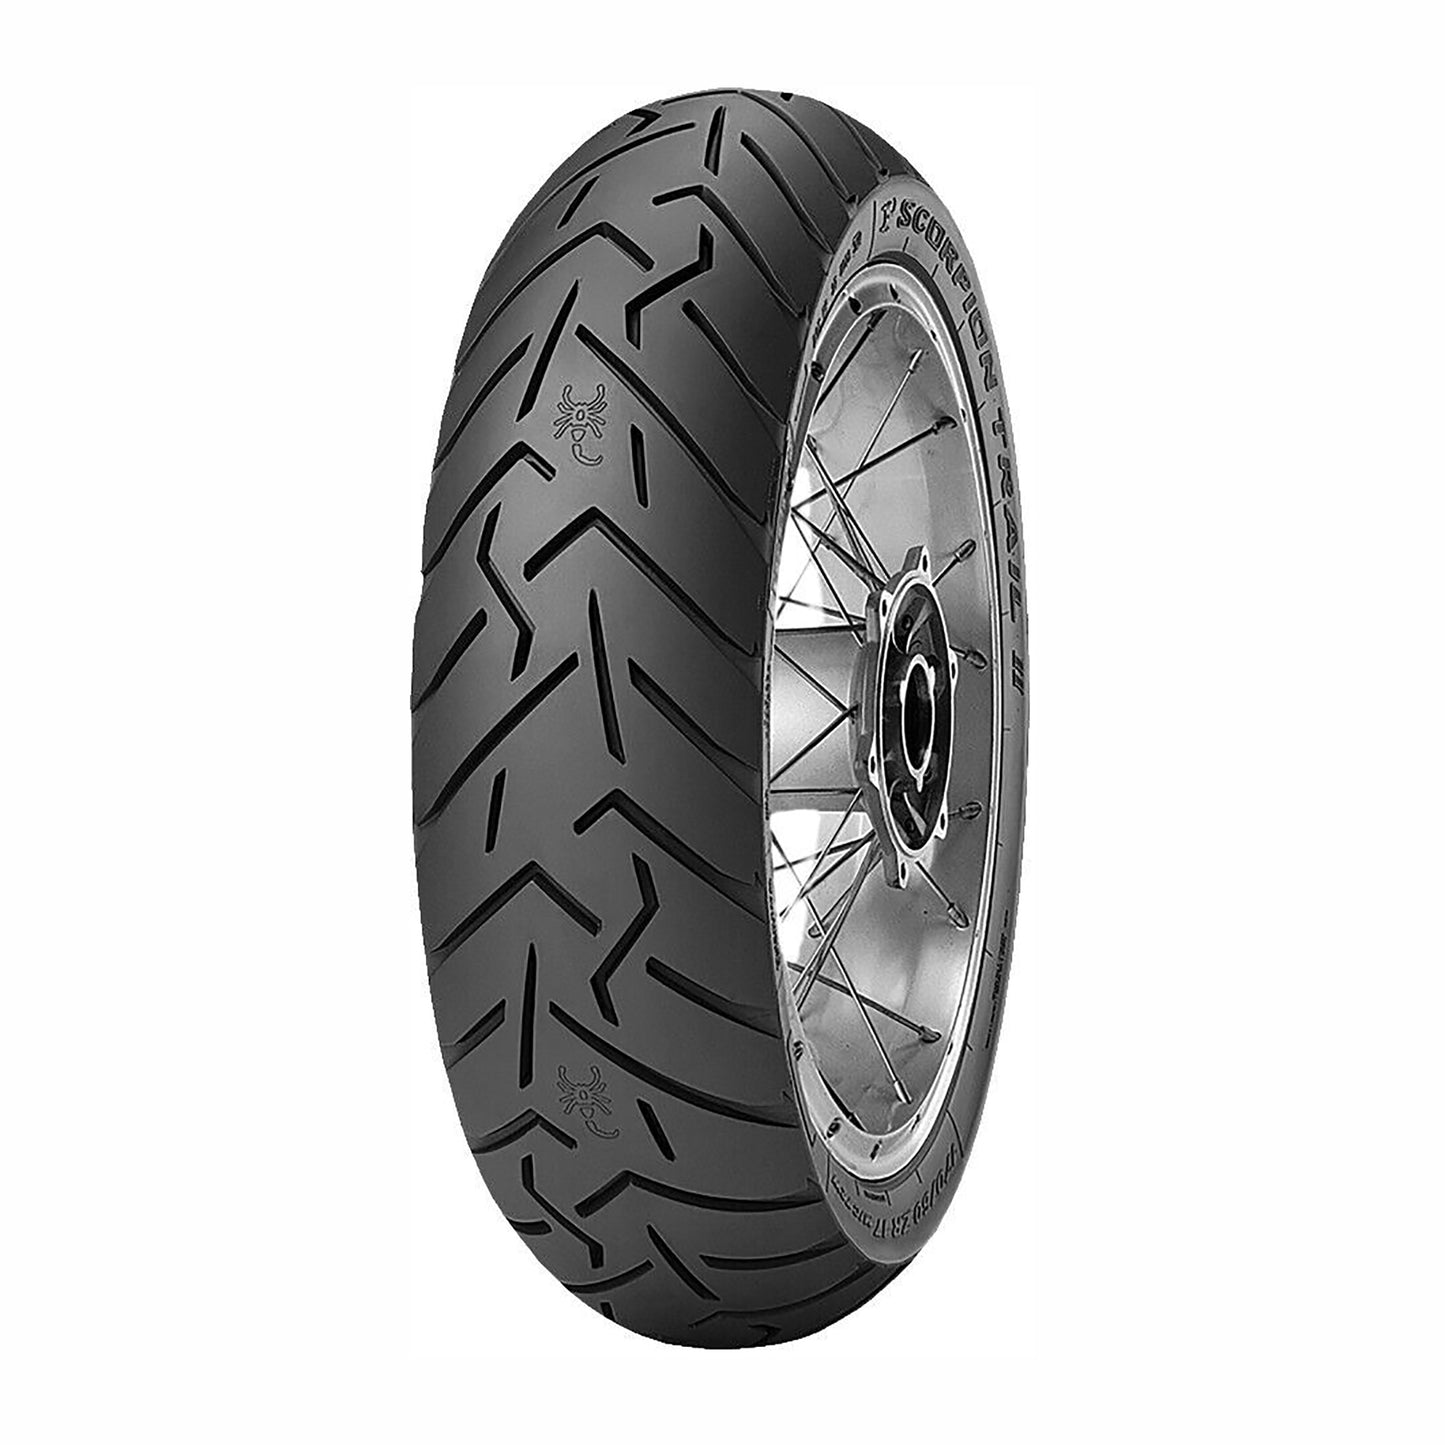 Pirelli Scorpion Trail II- Rear Tire 170/60R17 72W